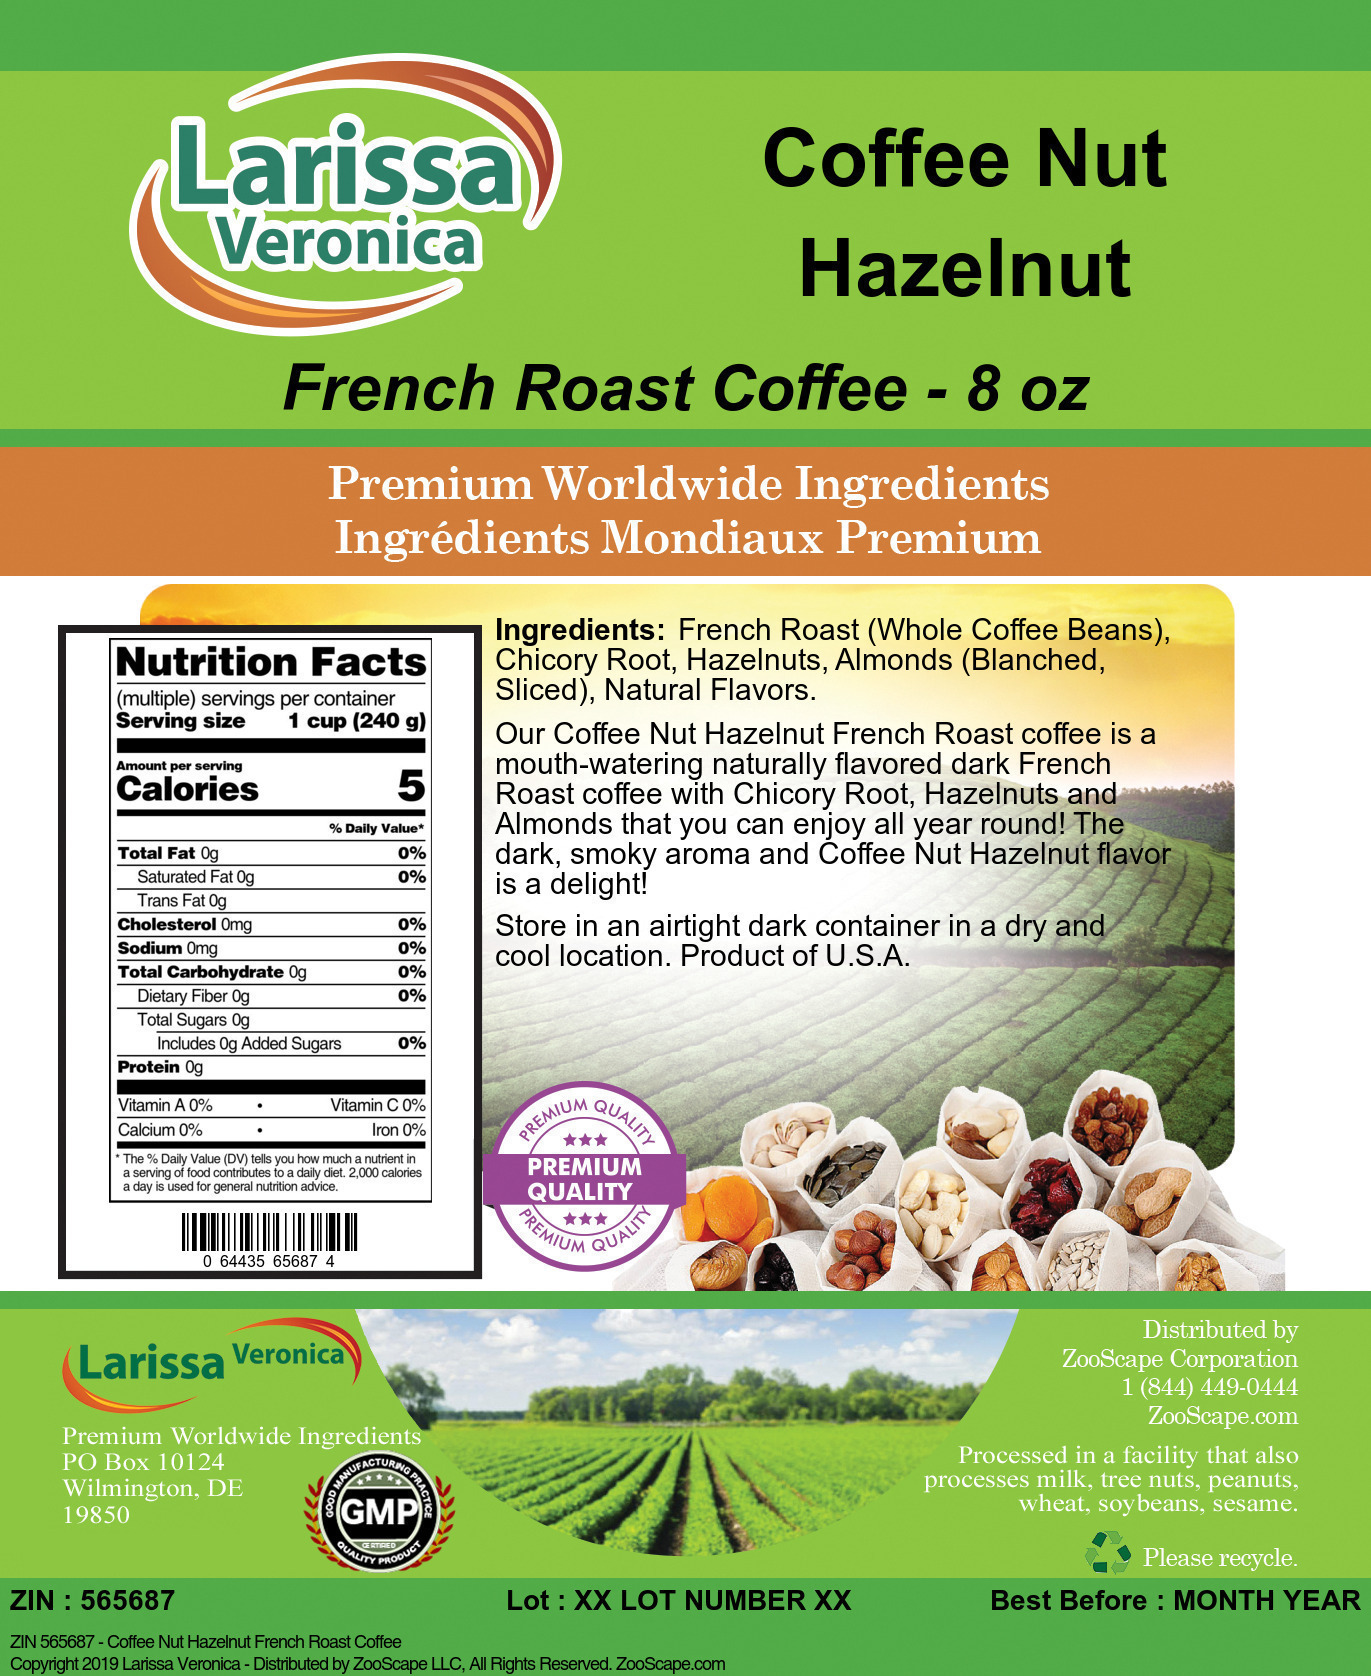 Coffee Nut Hazelnut French Roast Coffee - Label